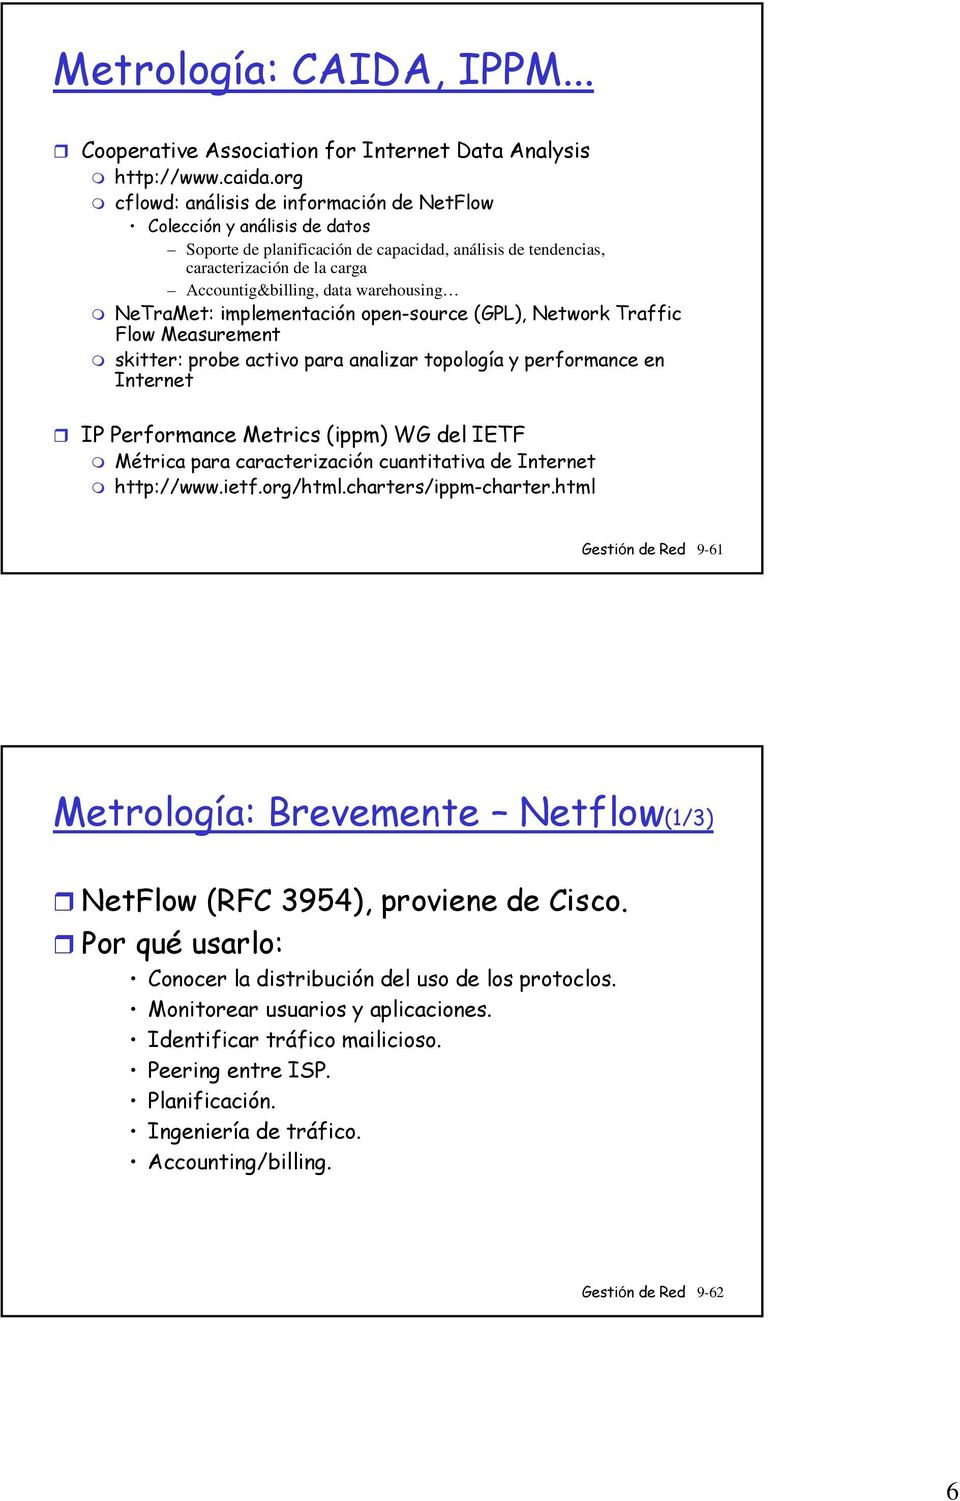 warehousing NeTraMet: implementación open-source (GPL), Traffic Flow Measurement skitter: probe activo para analizar topología y performance en Internet IP Performance Metrics (ippm) WG del IETF